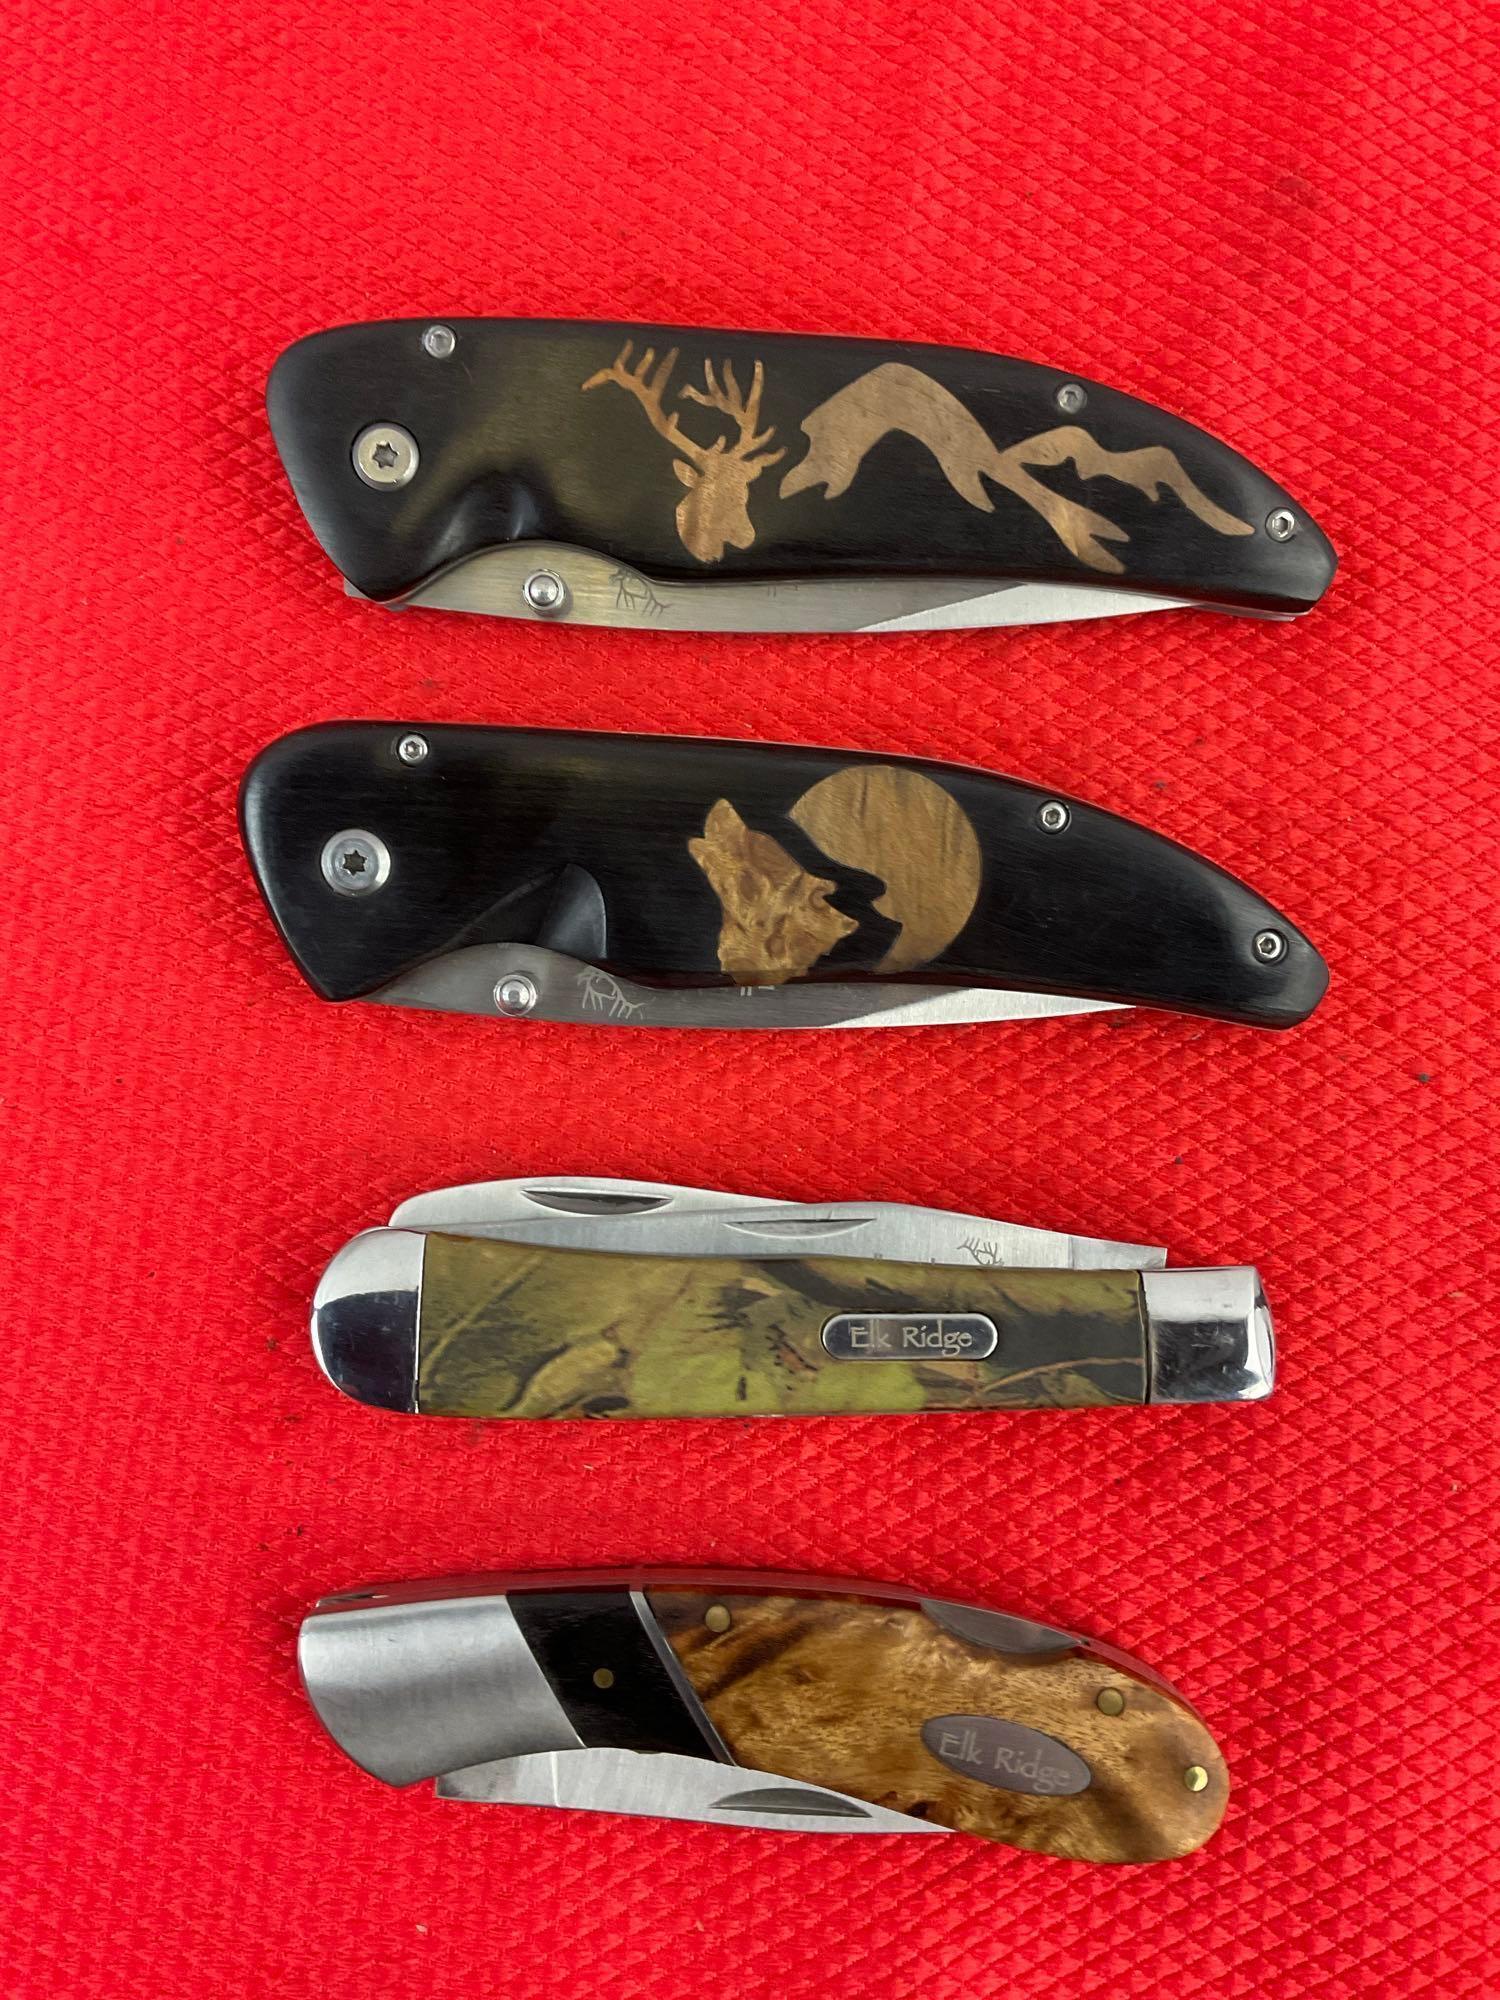 4 pcs Elk Ridge 440 Steel Folding Blade Pocket Knives Models 080D, 080W, 2 Unknown. NIB. See pics.